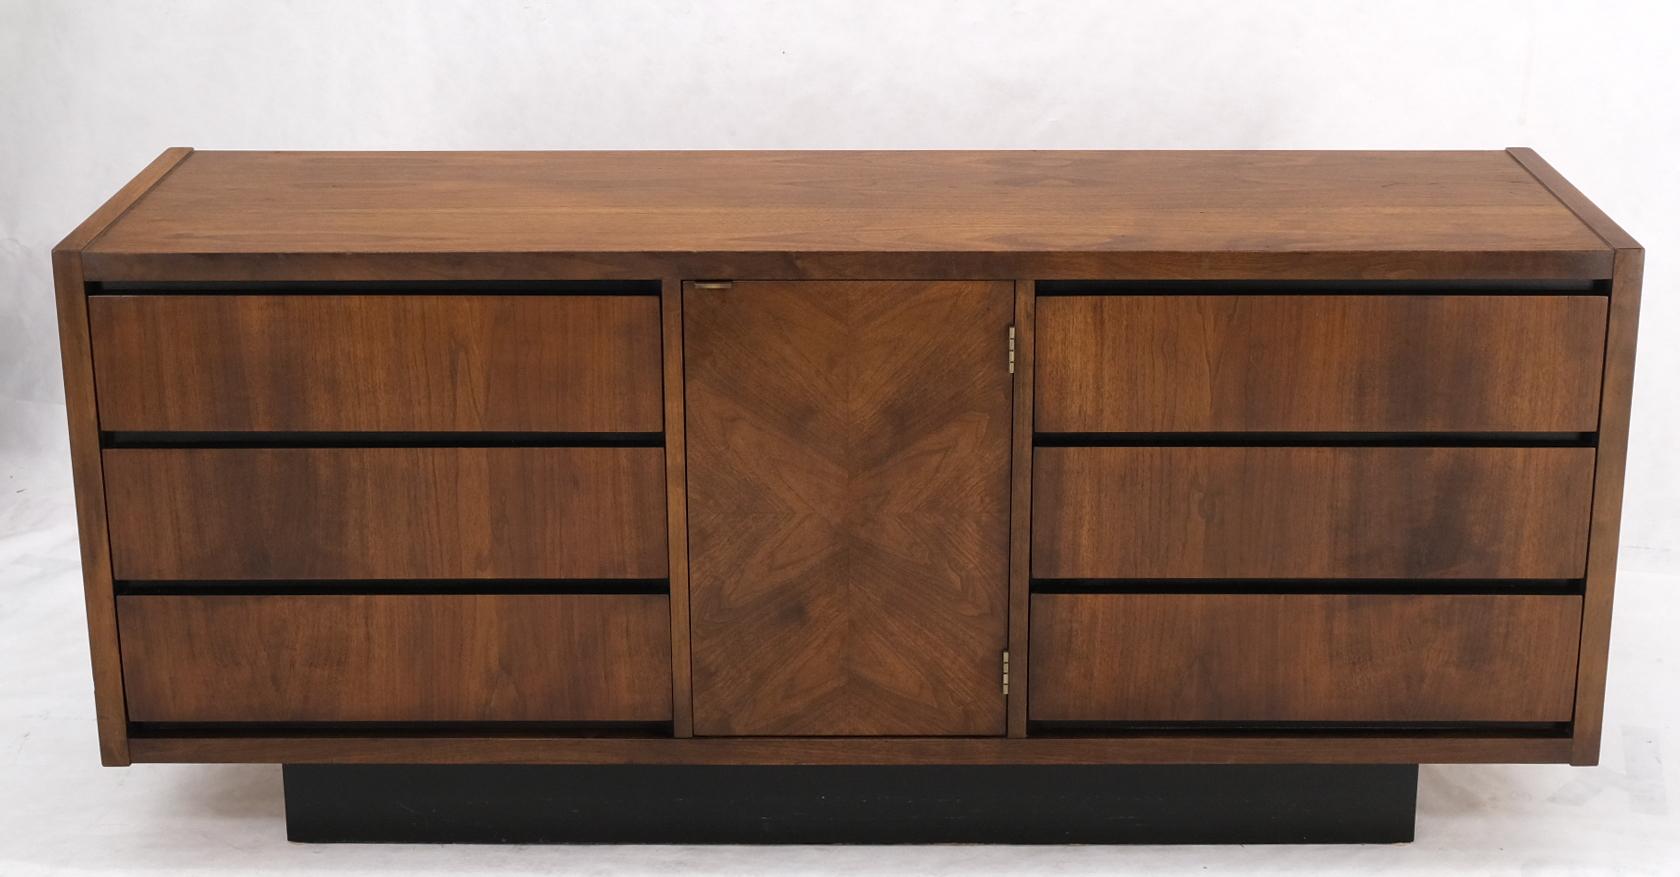 Mid-Century Modern 6 drawers door compartment walnut dresser credenza. Super clean original condition. Stunning walnut pattern and finish.